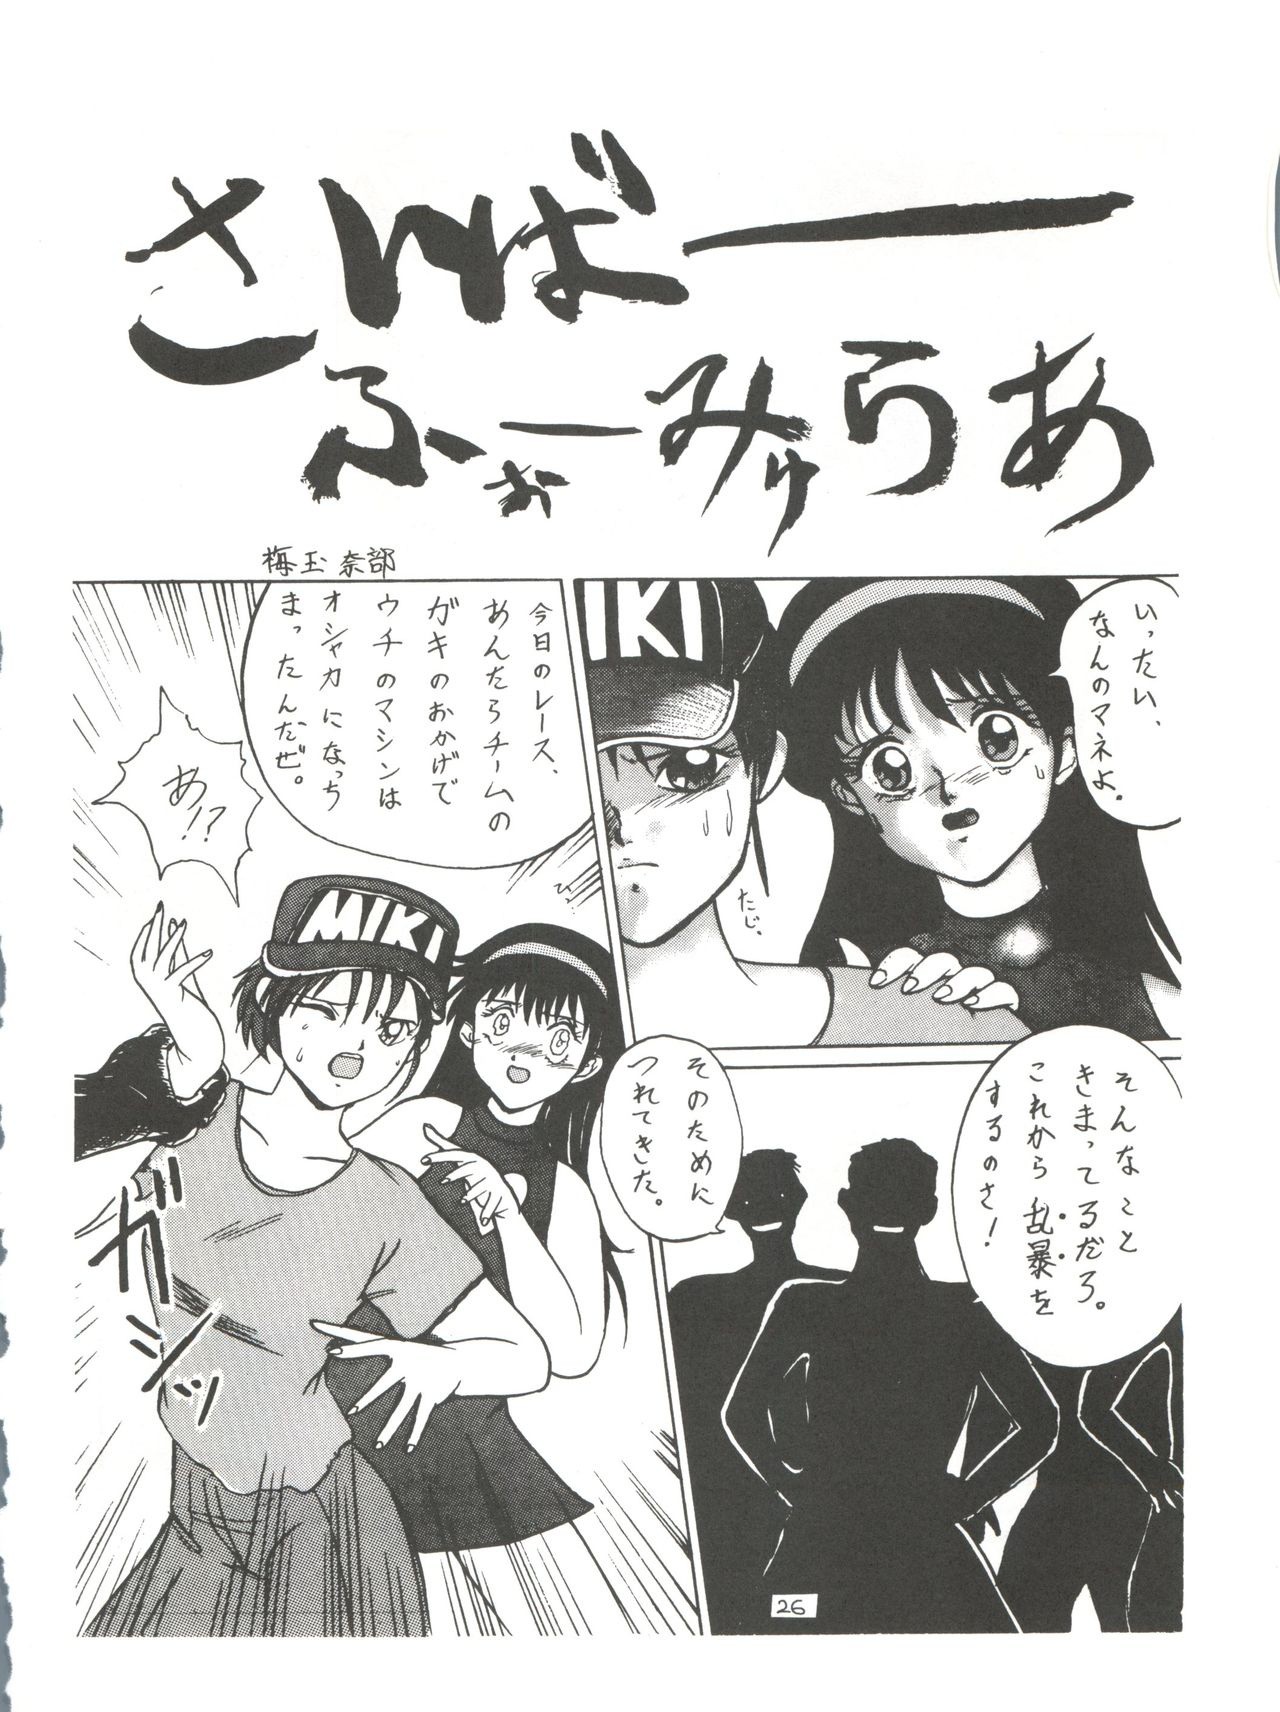 Yuuki and Yume and Mukubo's Japanese hentai manga picture 23